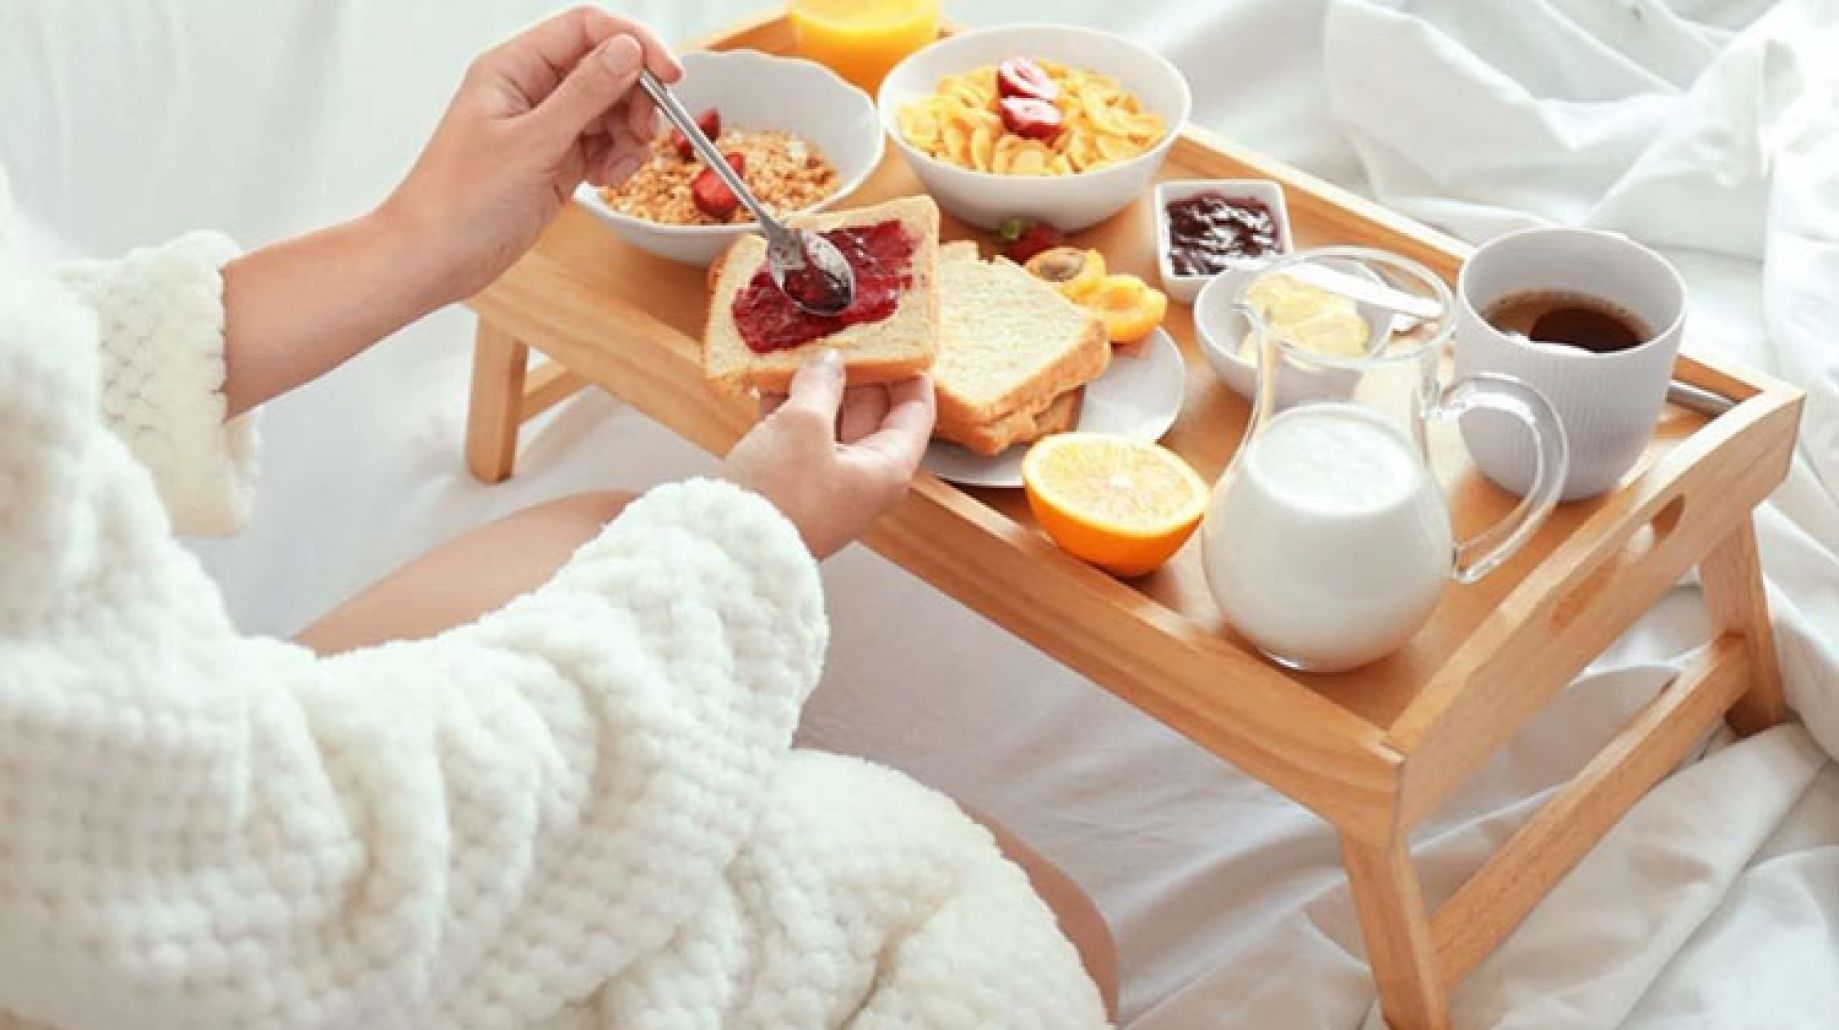 أطعمة قد تضر بصحتك عند تناولها في وجبة الإفطار